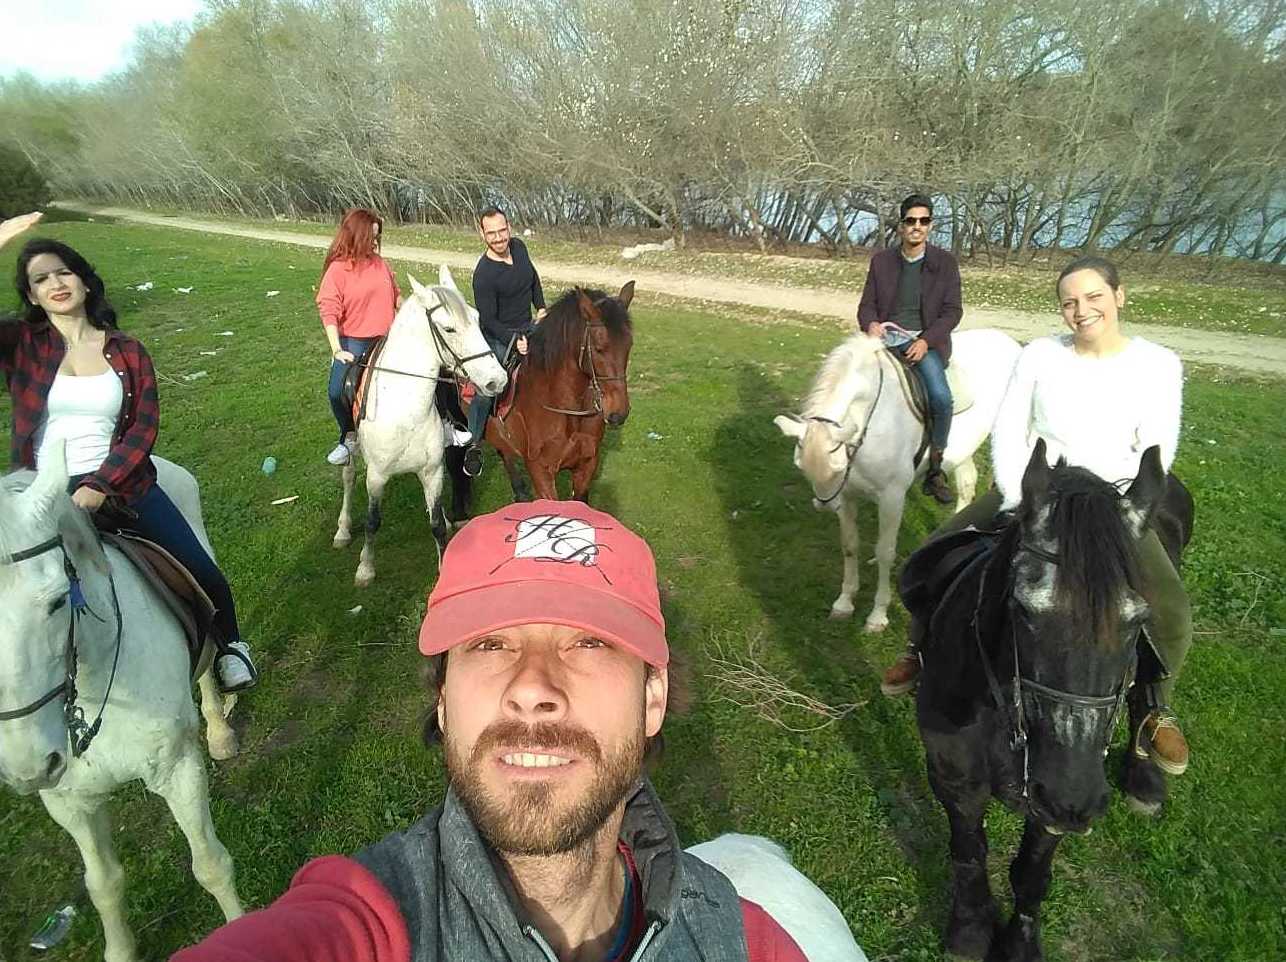 Paseos a caballo Sevilla